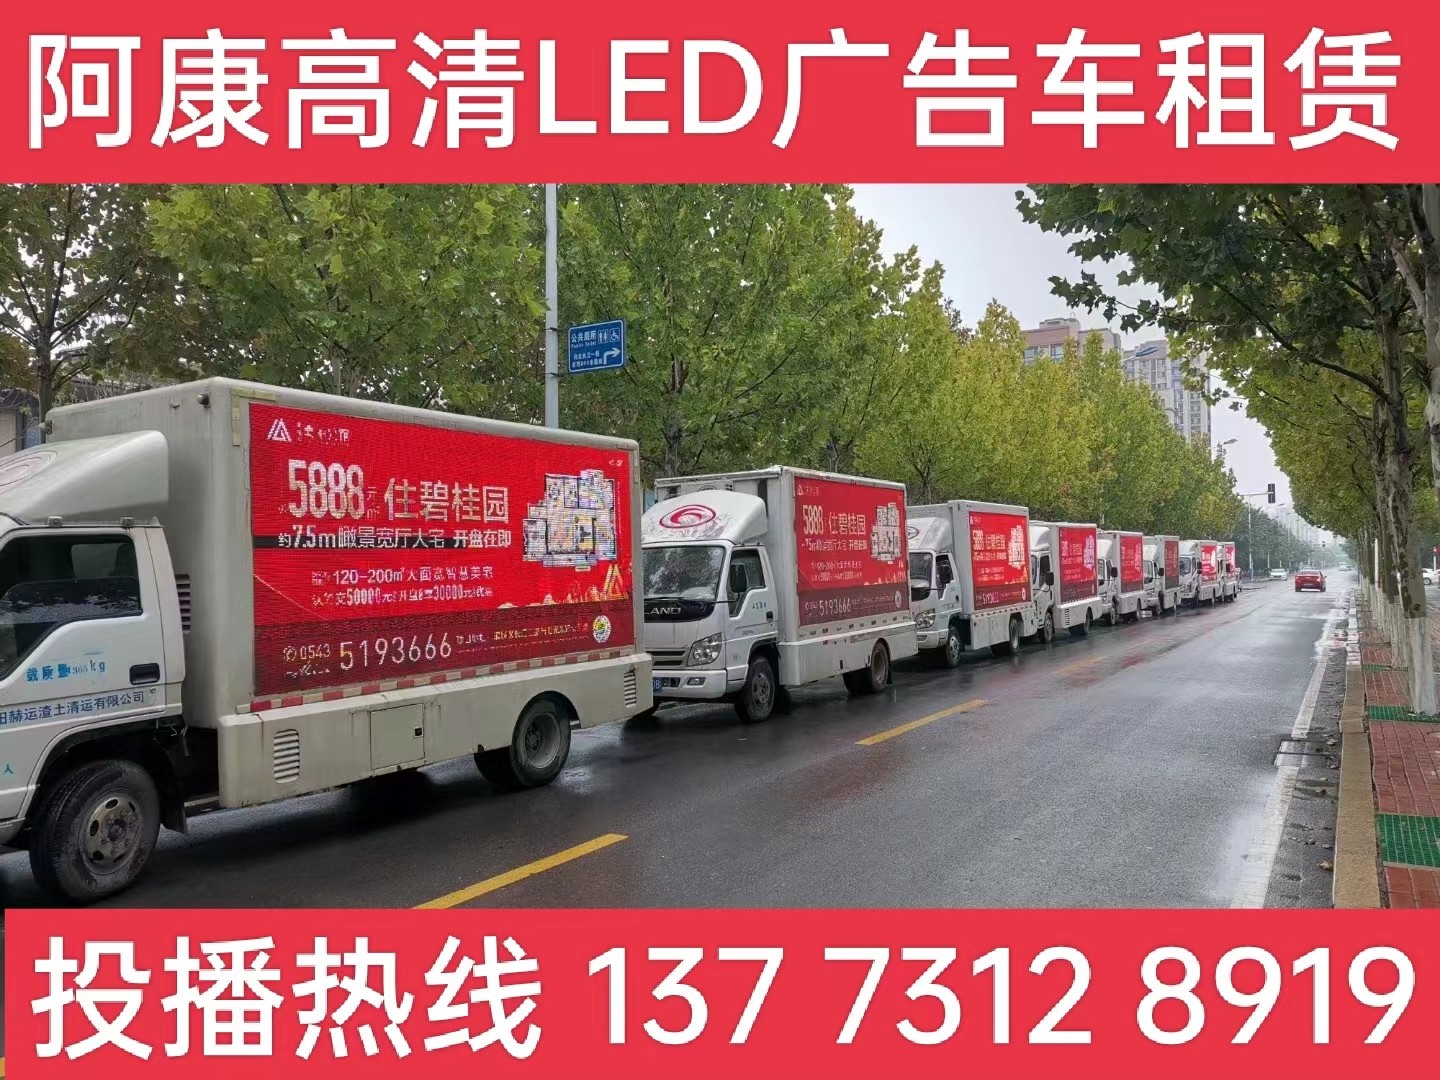 长兴县宣传车租赁公司-楼盘LED广告车投放